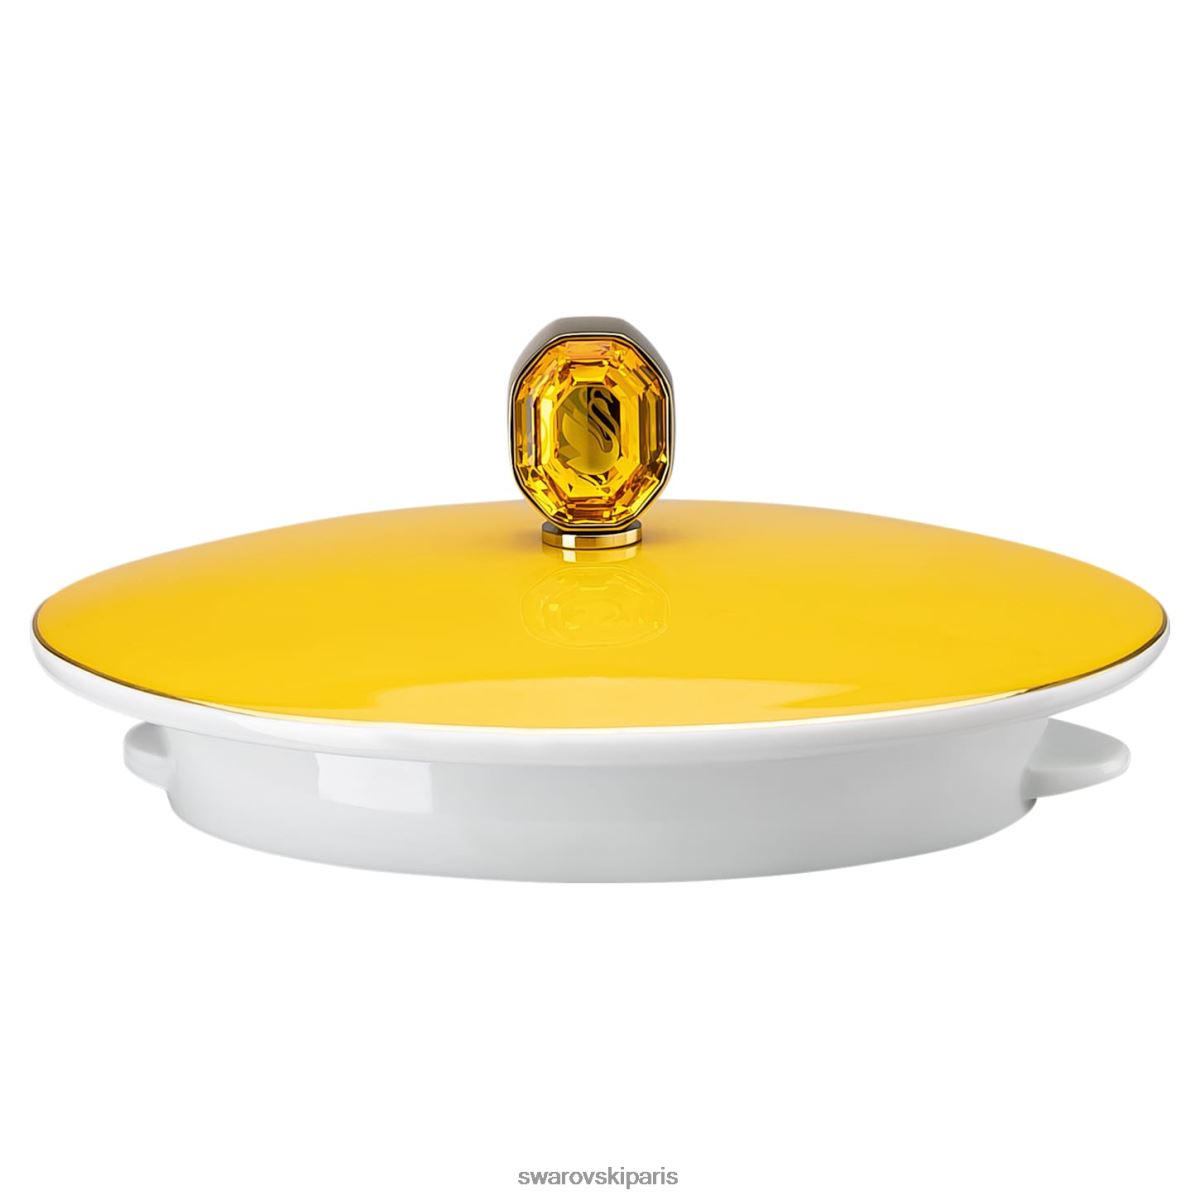 décorations Swarovski théière signum porcelaine, jaune RZD0XJ1730